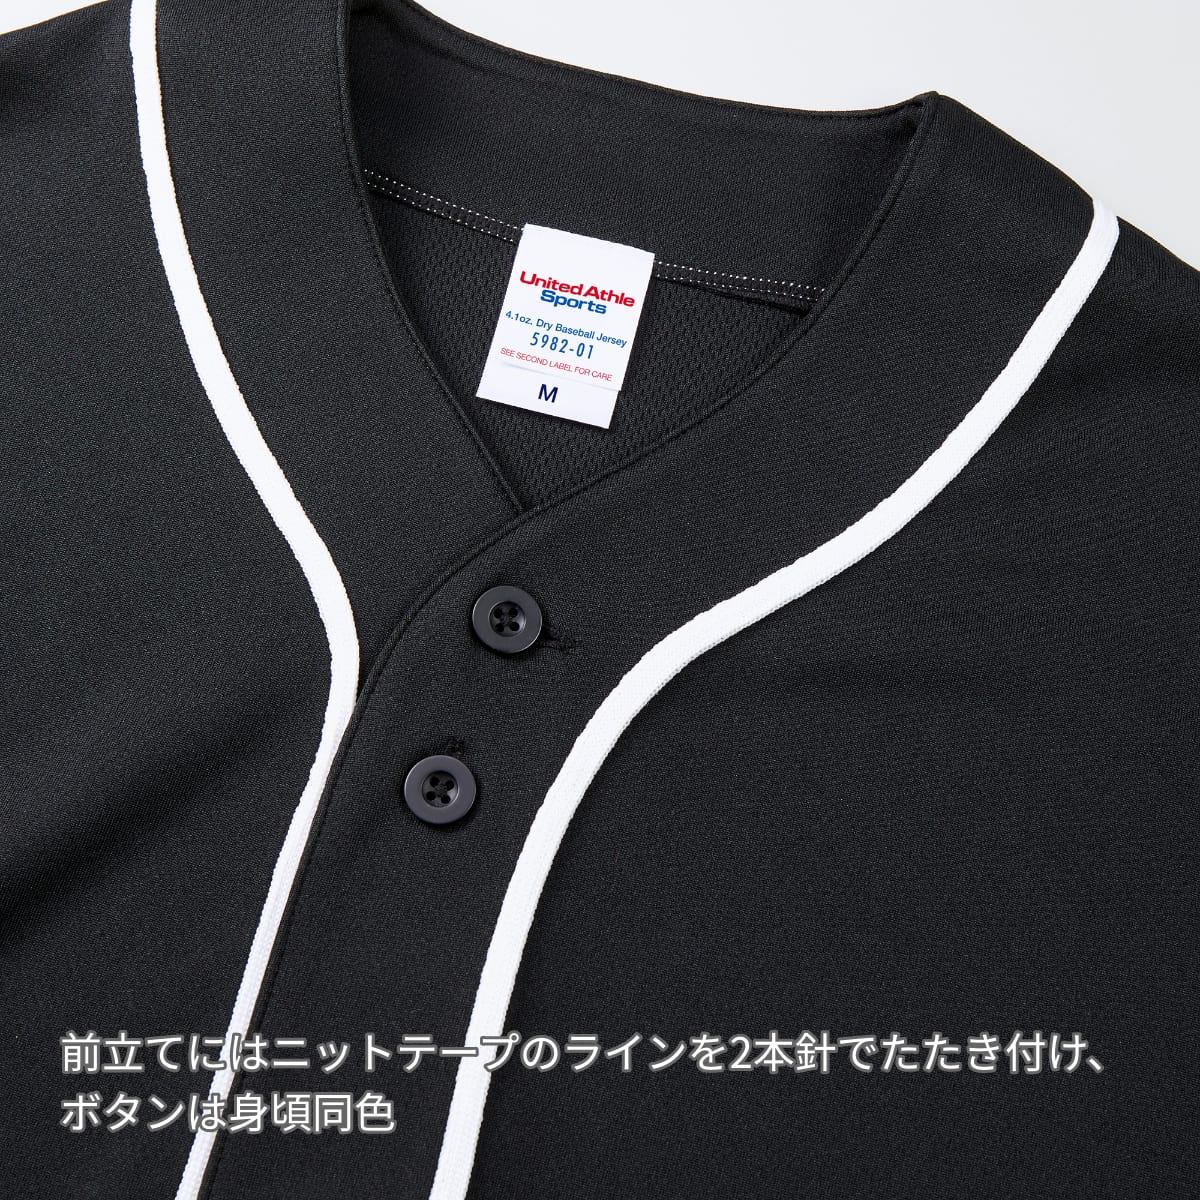 4.1オンス ドライアスレチック ベースボールシャツ | メンズ | 1枚 | 5982-01 | ブラック/ブラック